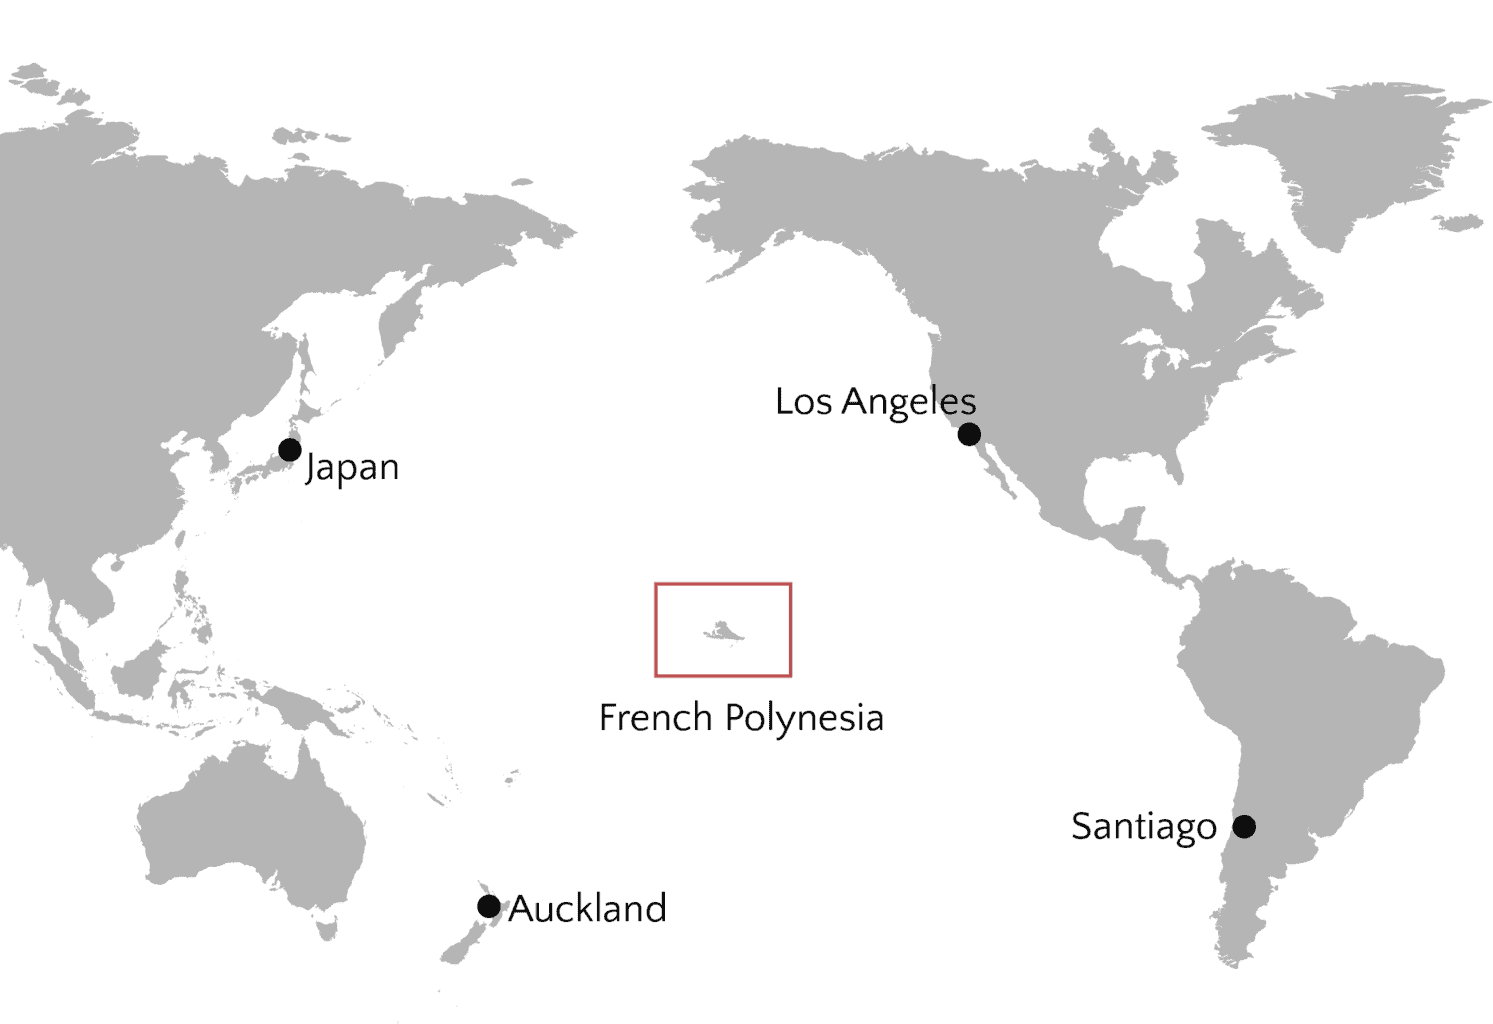 Hangi şehir Fransız Polinezyası'nın bir parçasıdır?